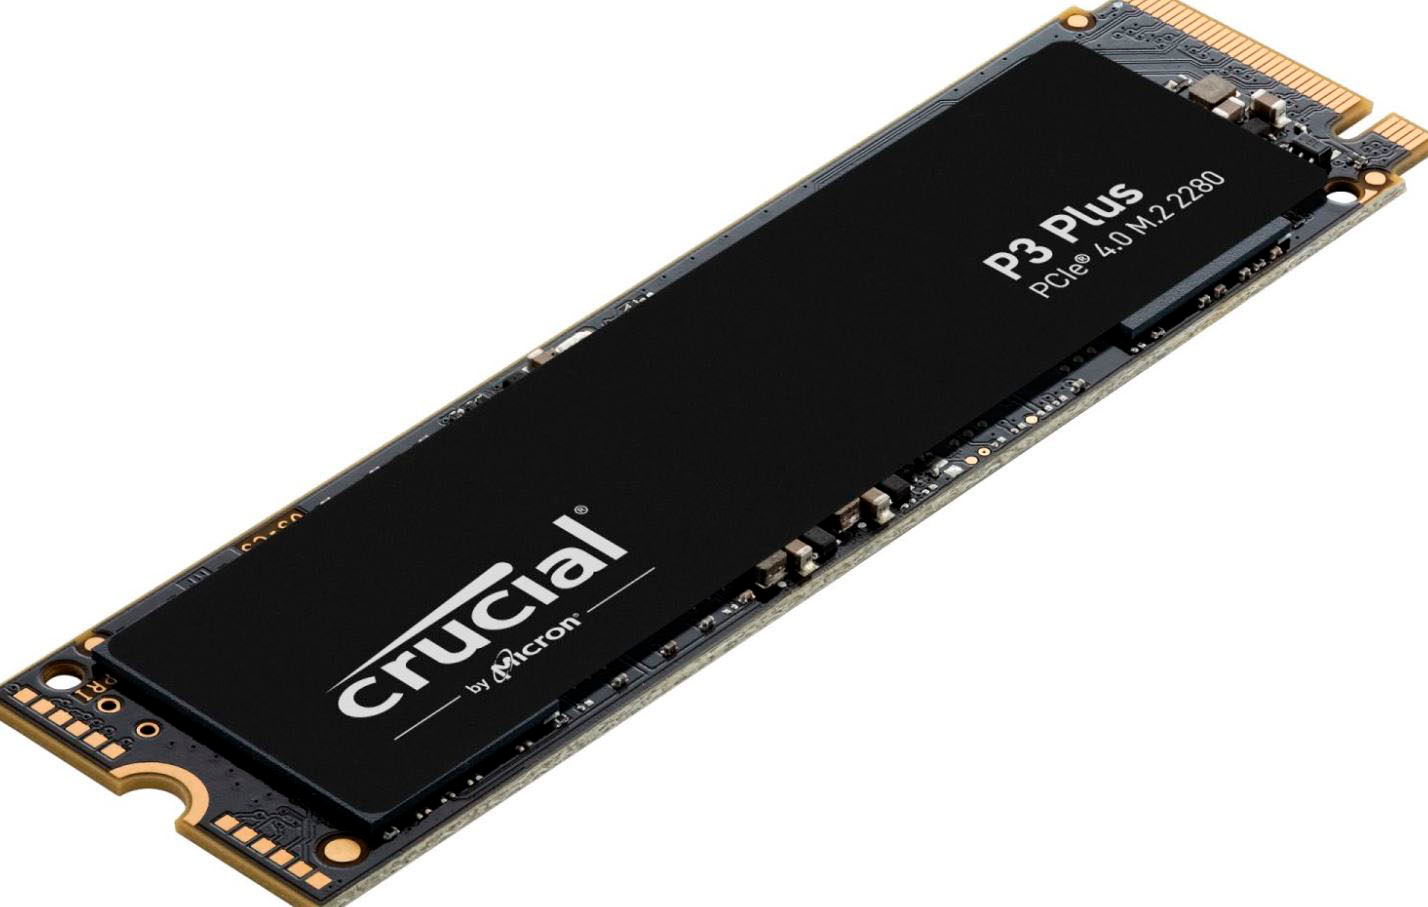 Crucial P3 Plus 4TB SSD PCIe Gen 4 x4 CT4000P3PSSD8 - Best Buy